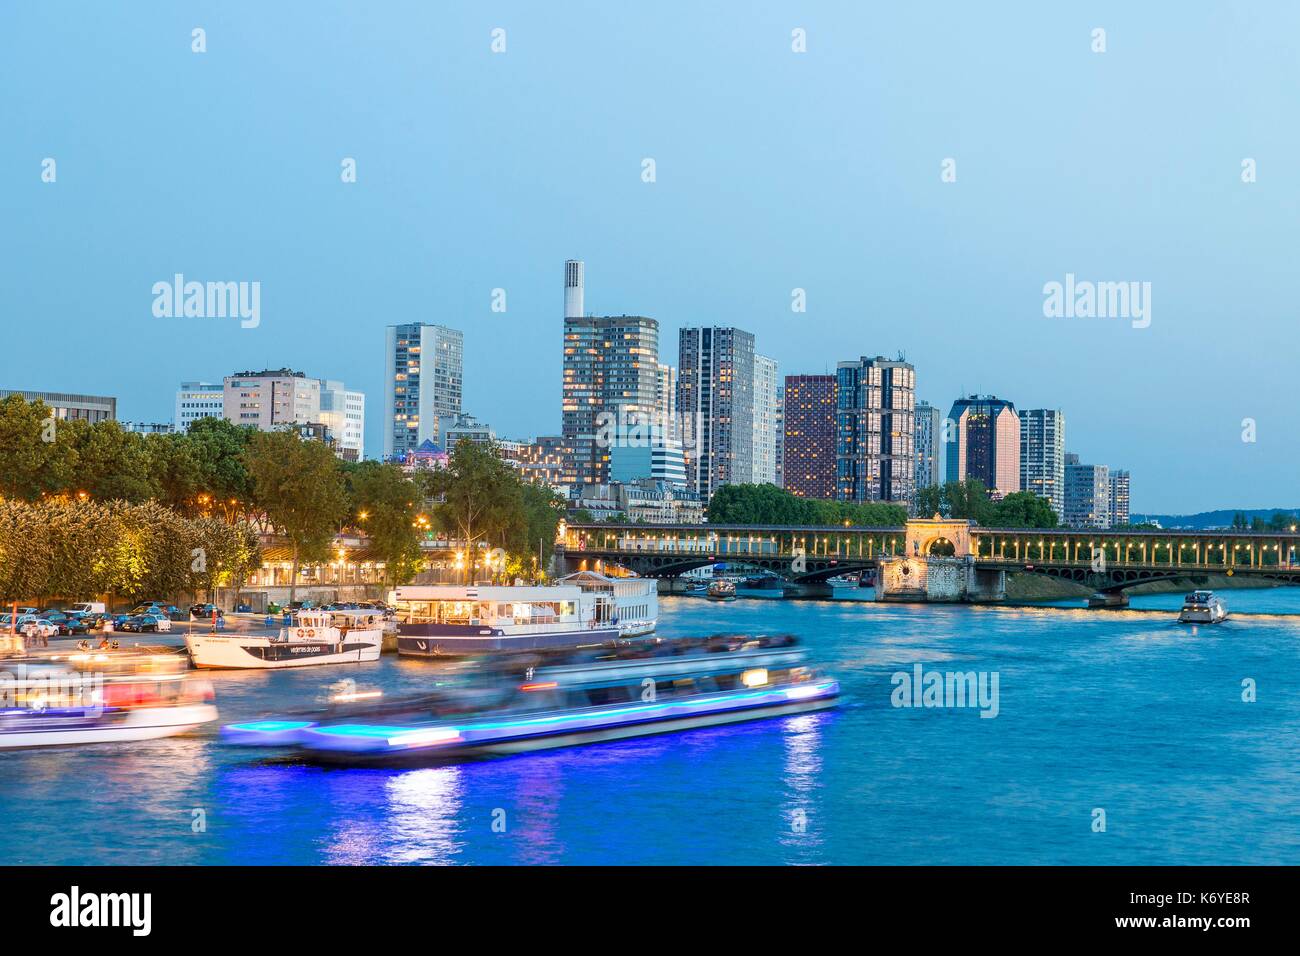 France, Paris, banks of the Seine, the Front de Seine district on the quai Andre Citroen Stock Photo